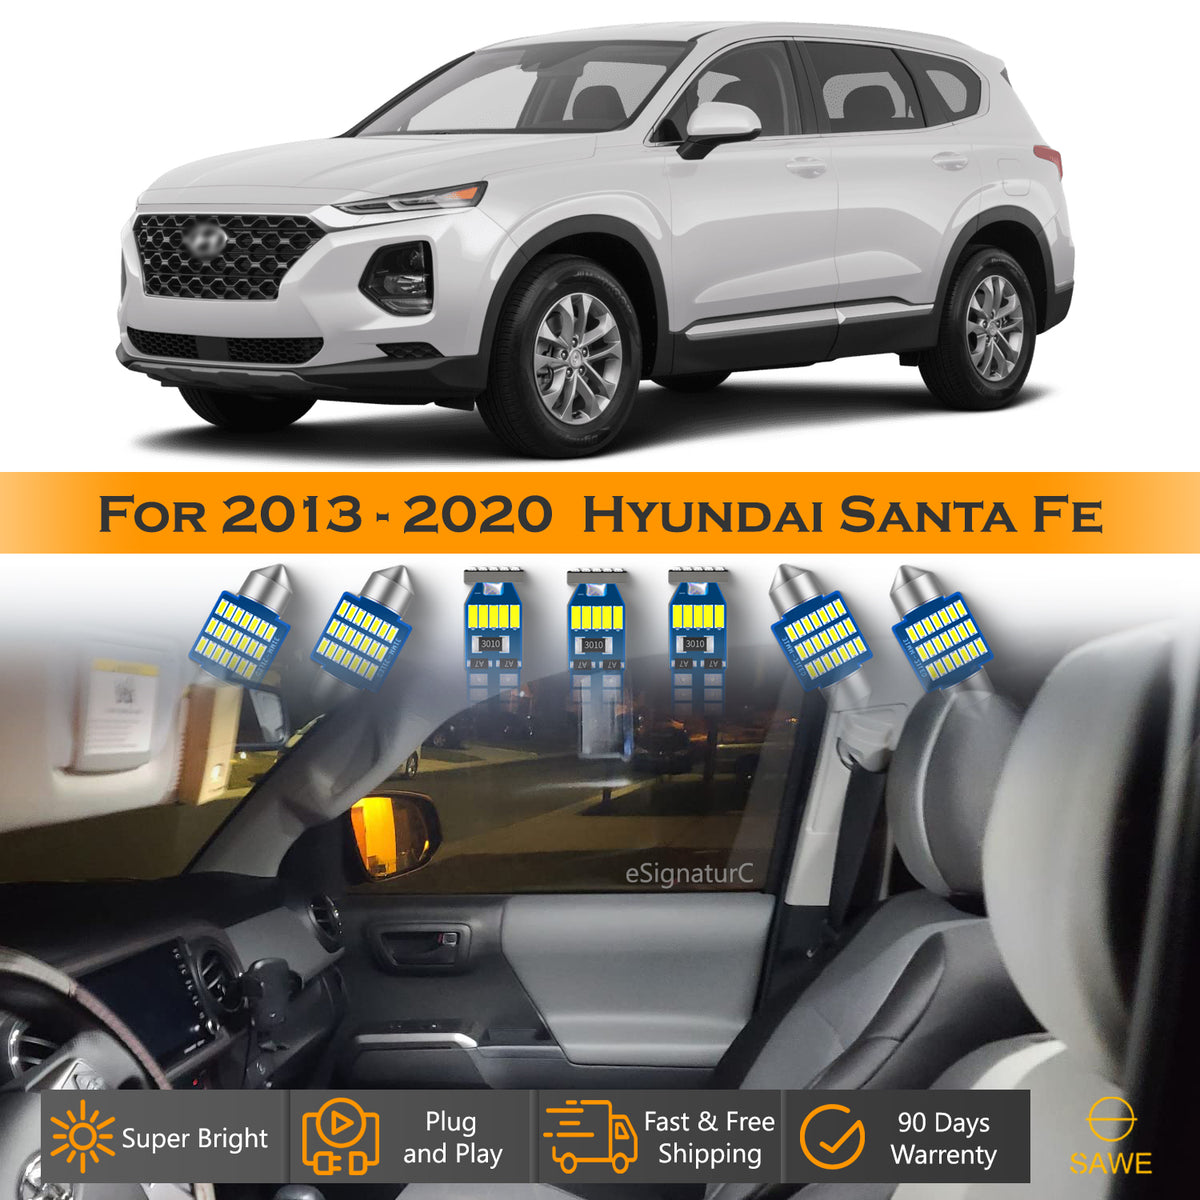 For Hyundai Santa Fe Interior LED Lights - Dome & Map Light Bulbs Package Kit for 2013 - 2020 - White